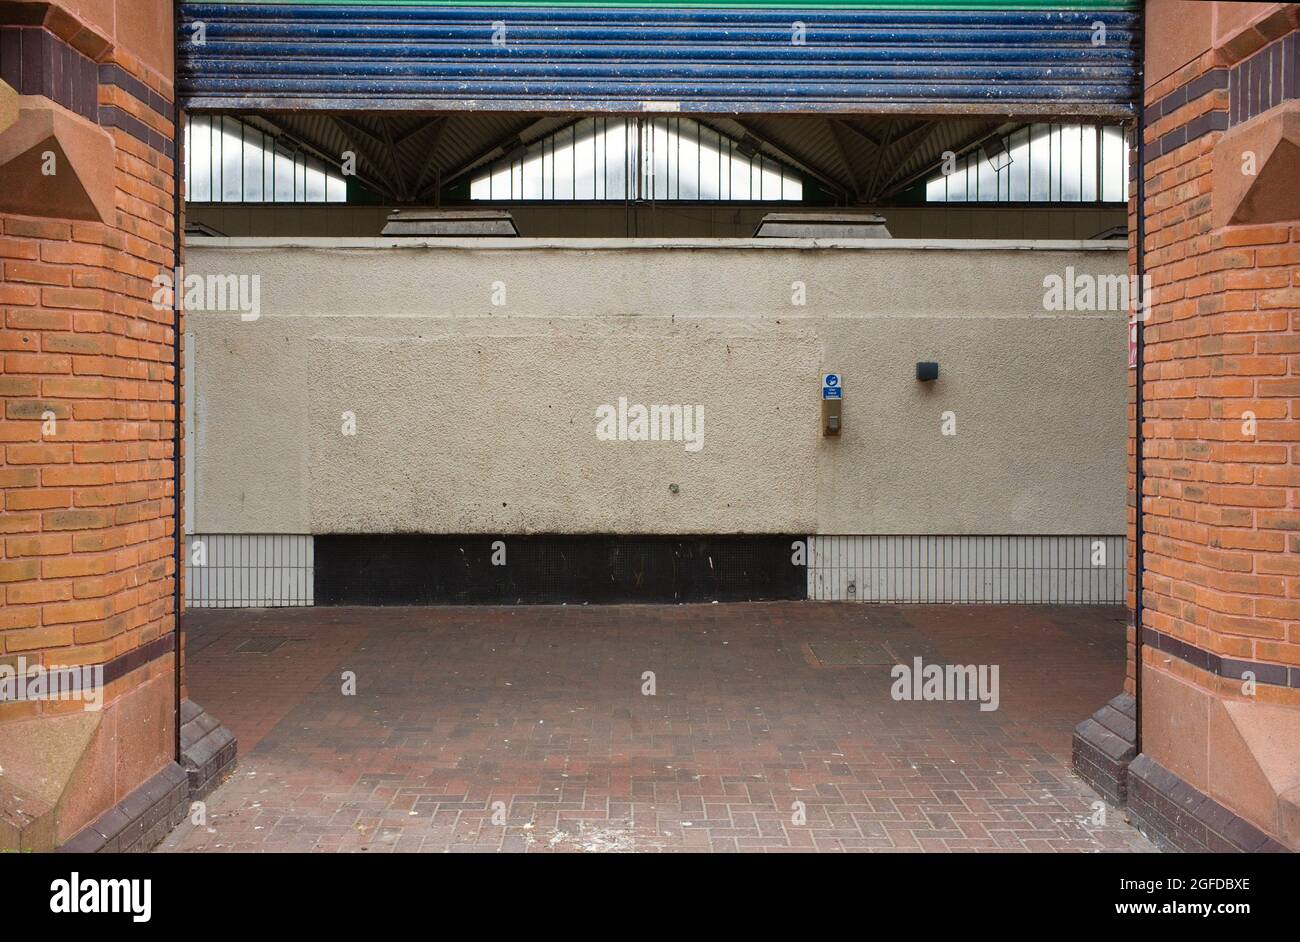 La fotografia più noiosa mai mostrando un muro vuoto e strada lastricata con sanitizer a mano sul muro al mercato Birkenhead Foto Stock